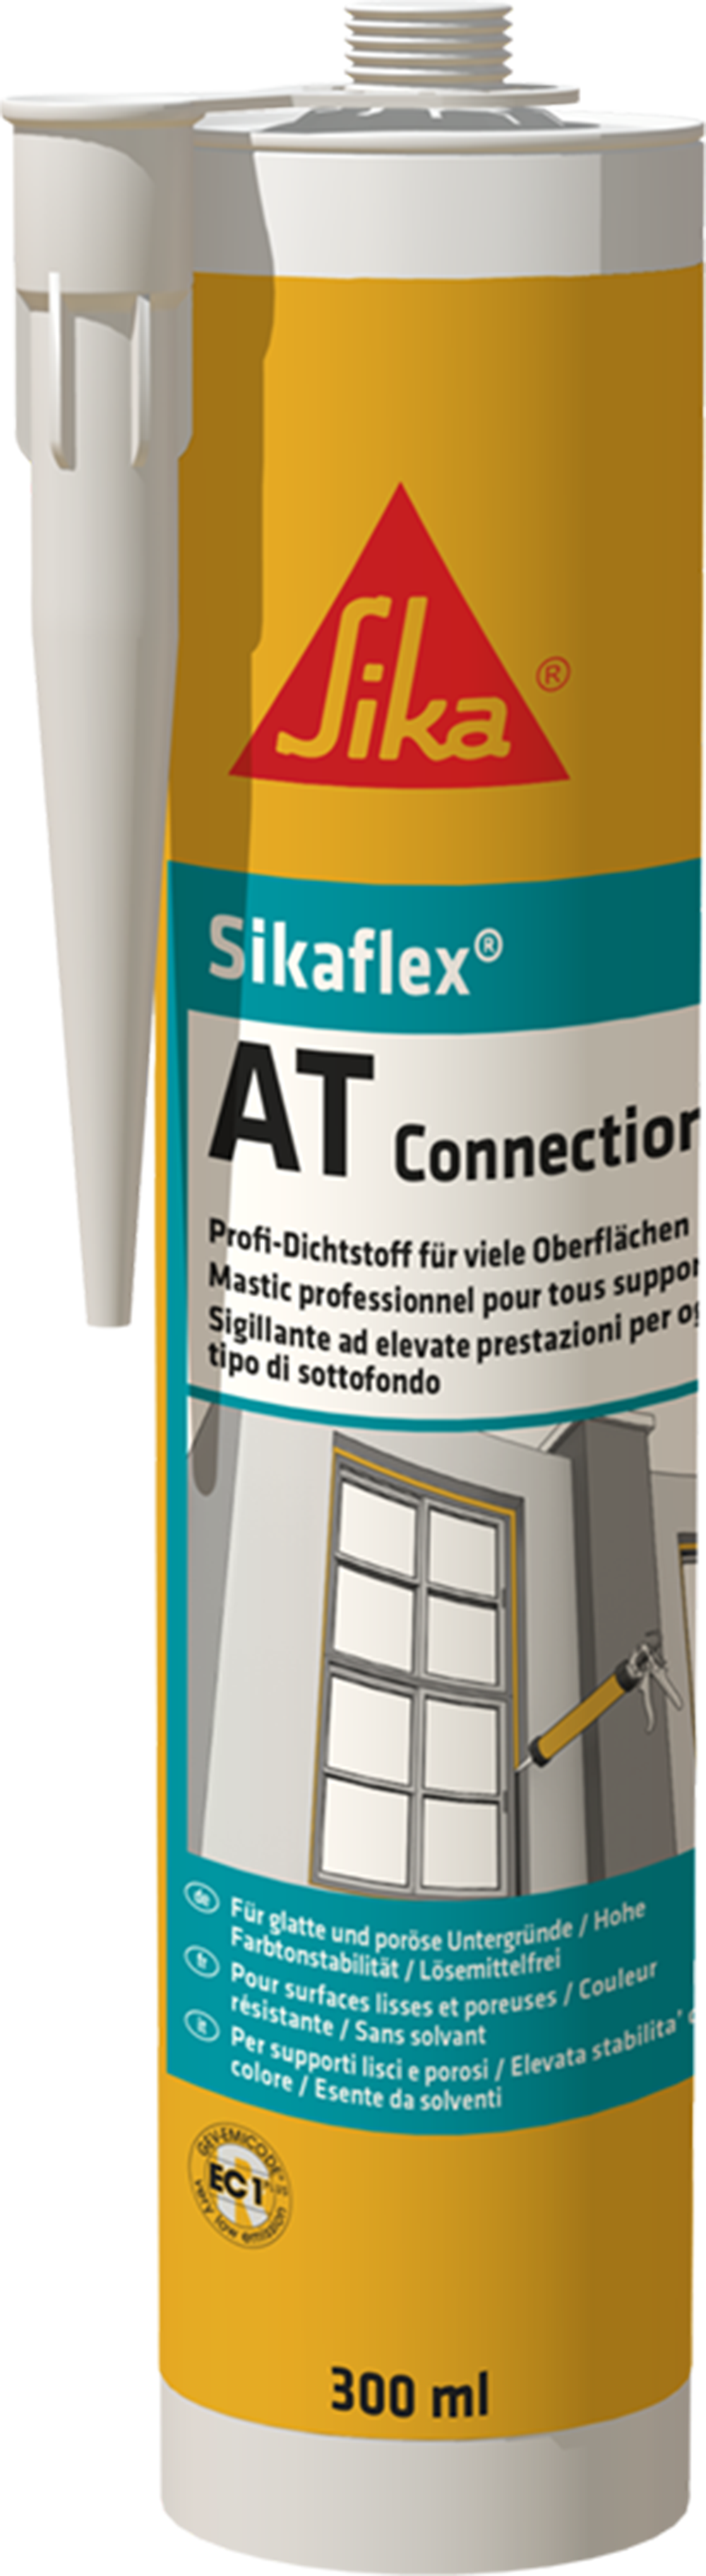 SIKAFLEX® AT CONNECTION - Der Flexible 310 ml